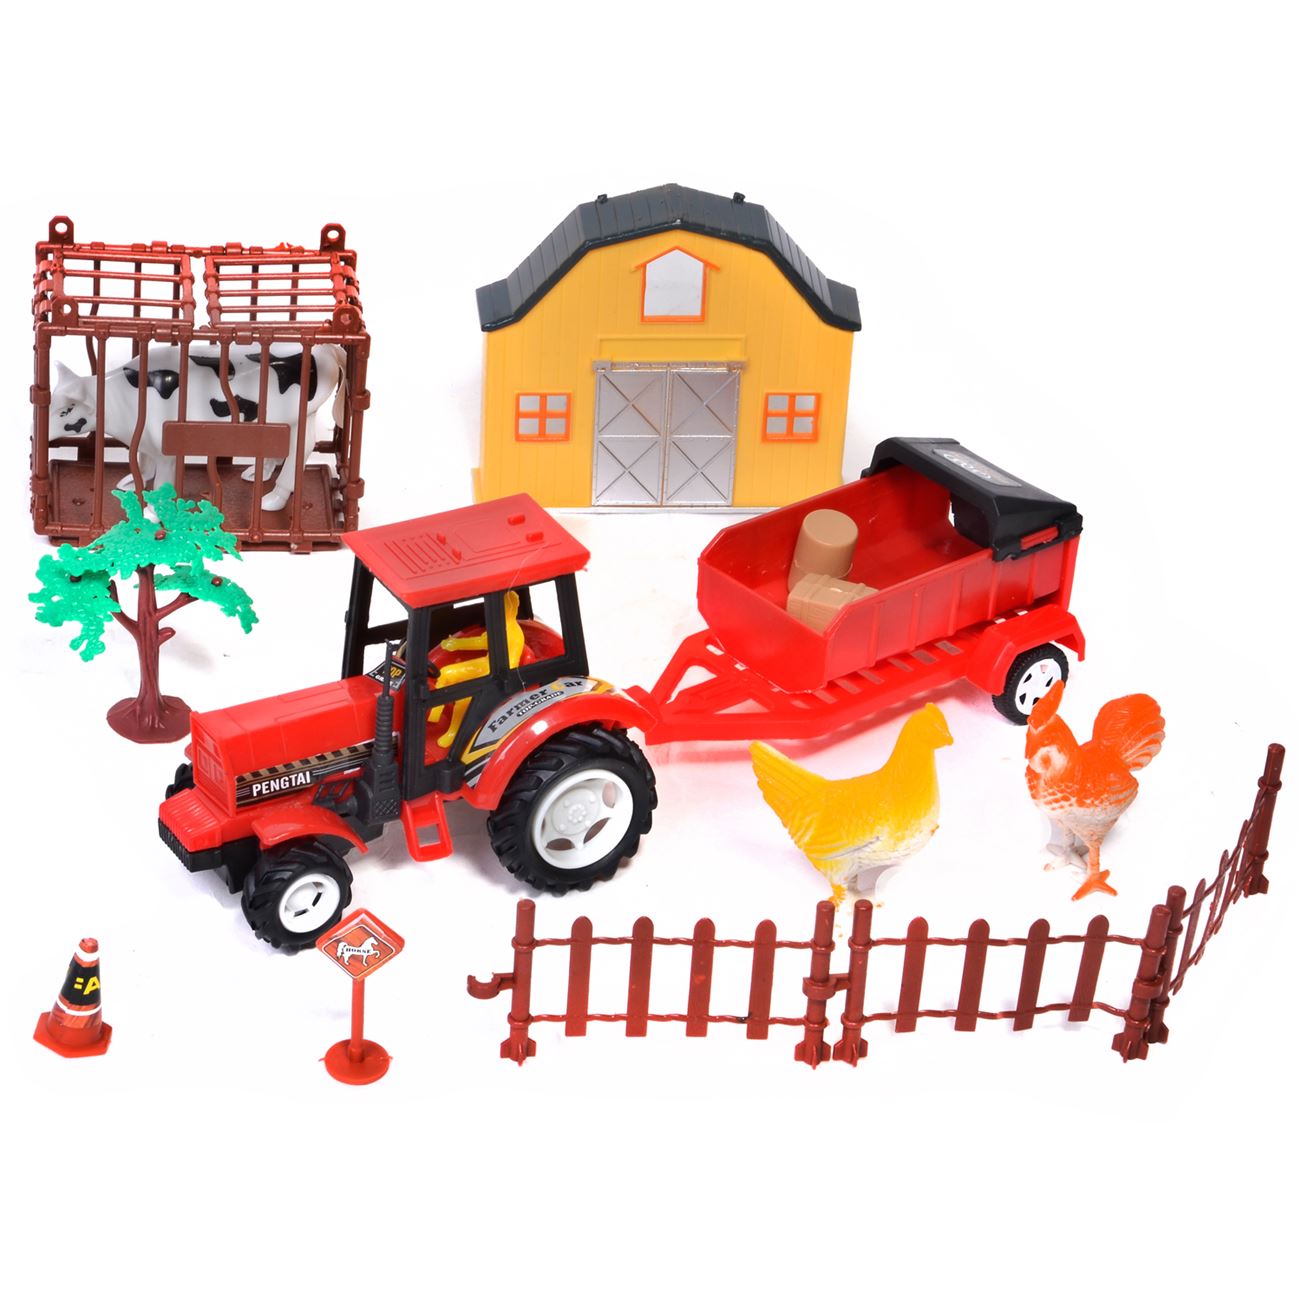 Farm szett állatokkal, traktorral